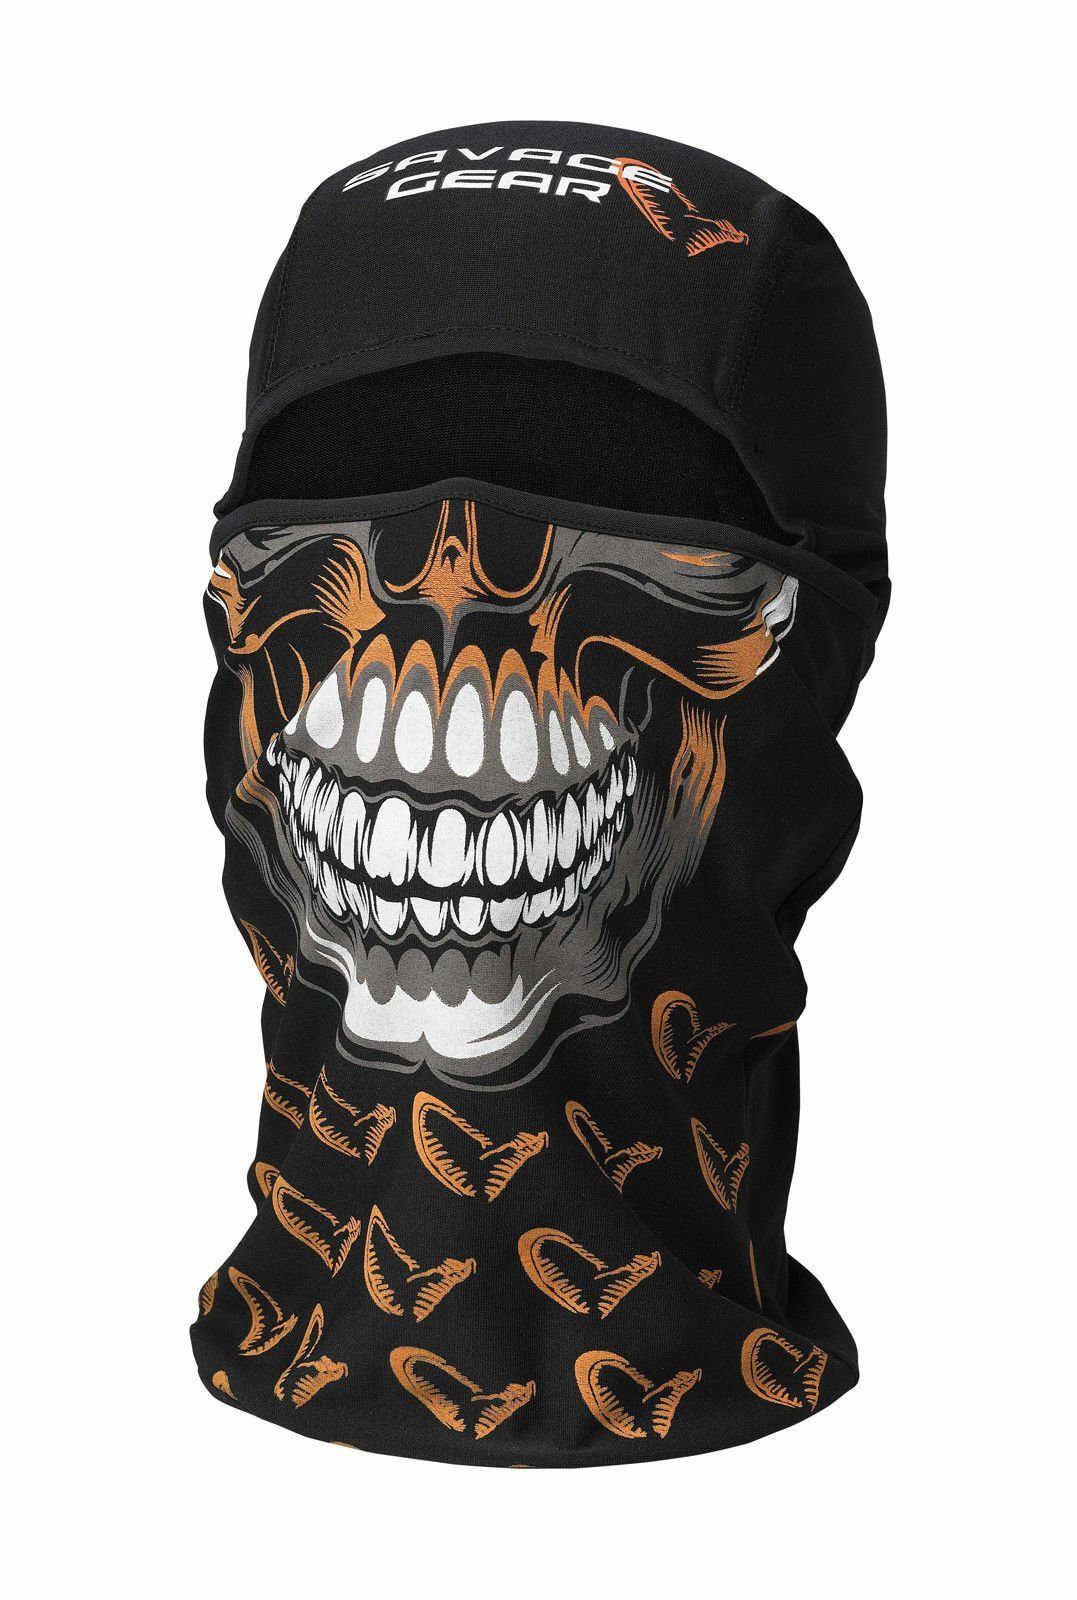 Gear (1-St), Multifunktionstuch Die Einheitsgröße Balaclava Skull Mütze jedem Savage Kälteschutz Erwachsenen Haube, Gesichtsmaske passt Kopfbedeckung